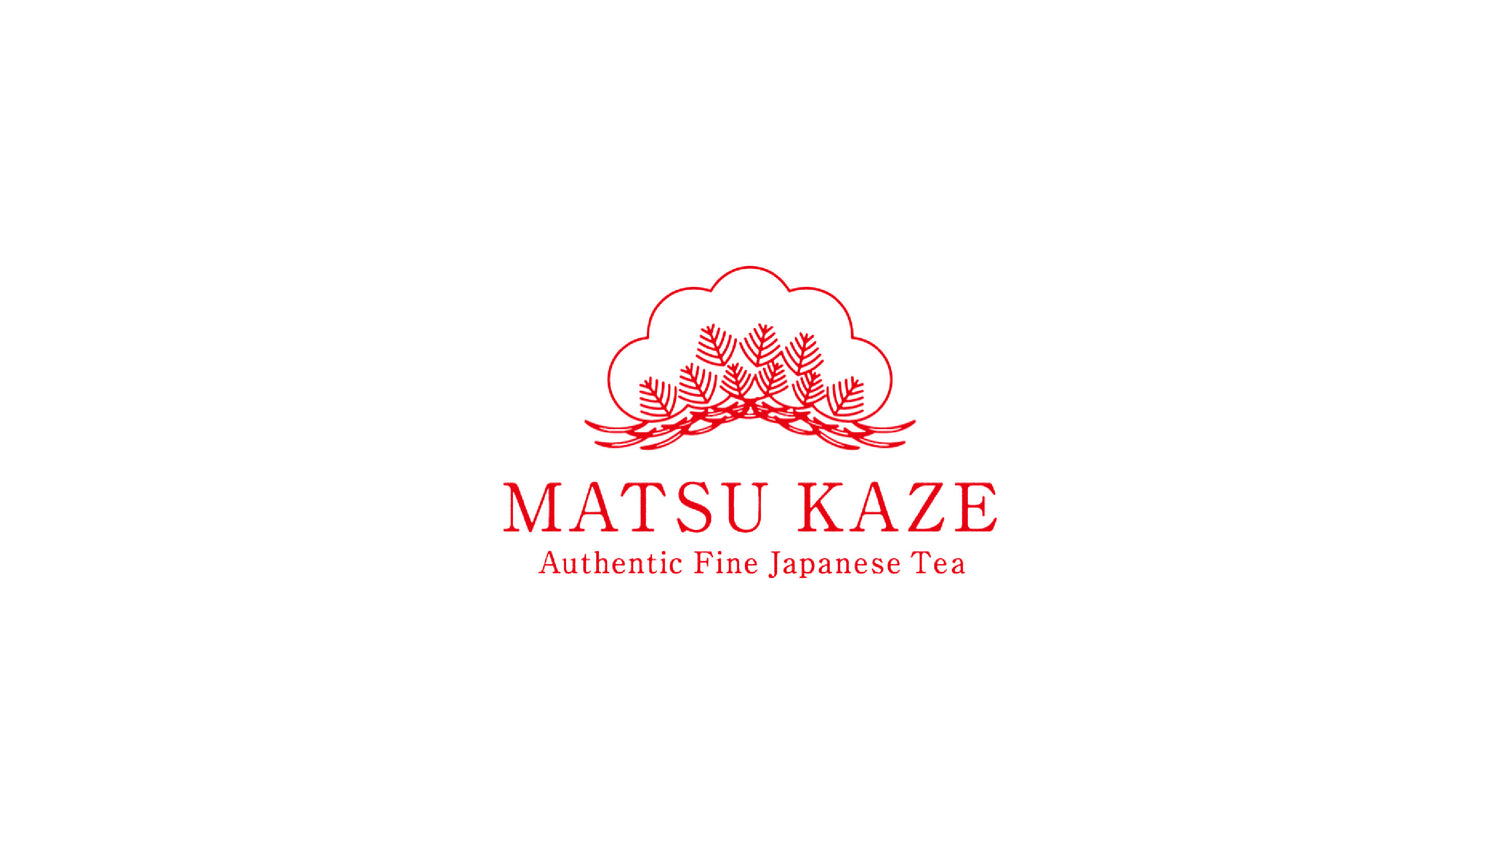 Matsu Kaze Tea